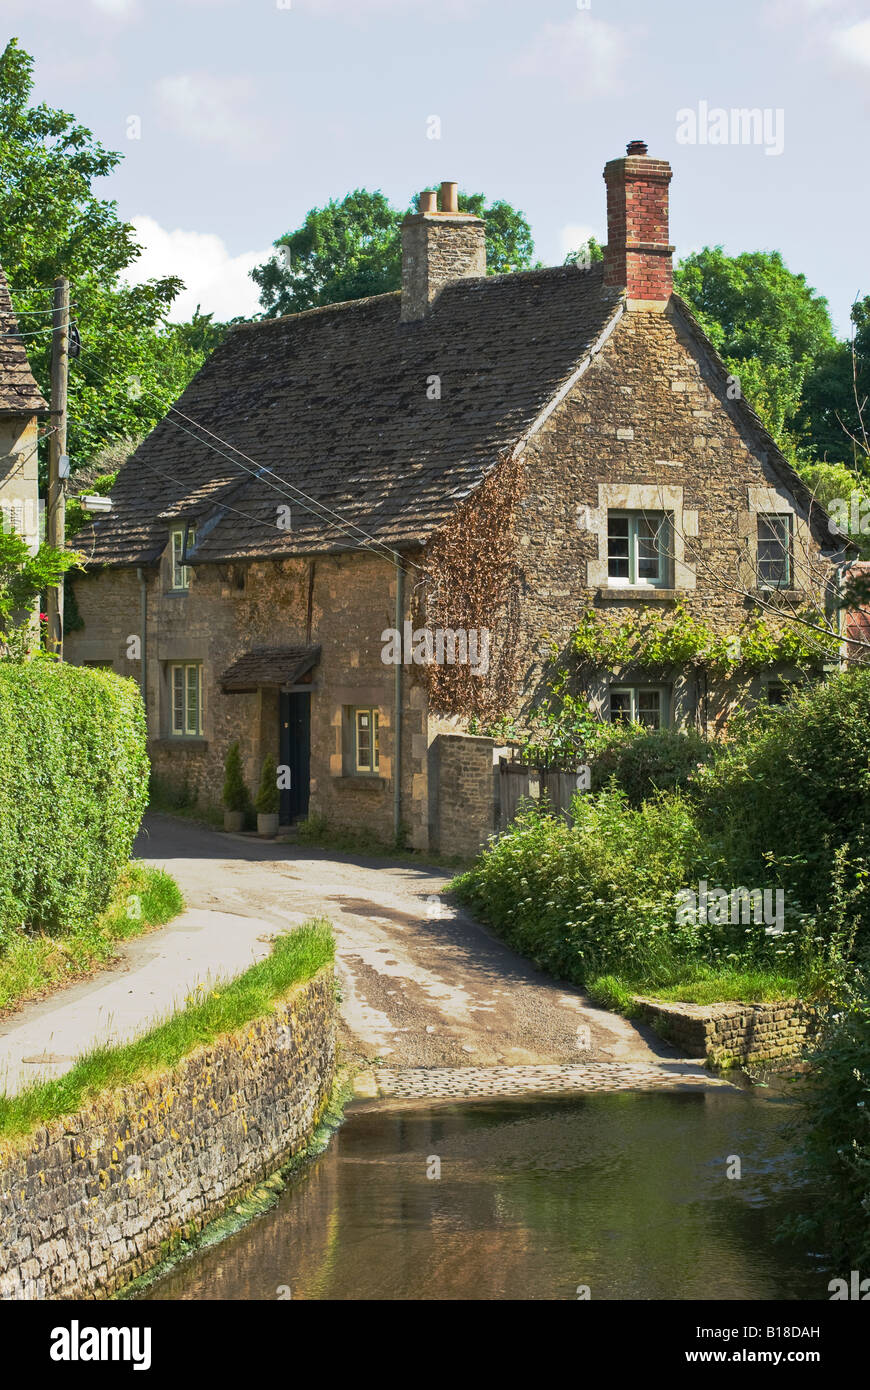 Eine ruhige Ecke auf ein altes englisches Dorf in den frühen Morgenstunden Stockfoto